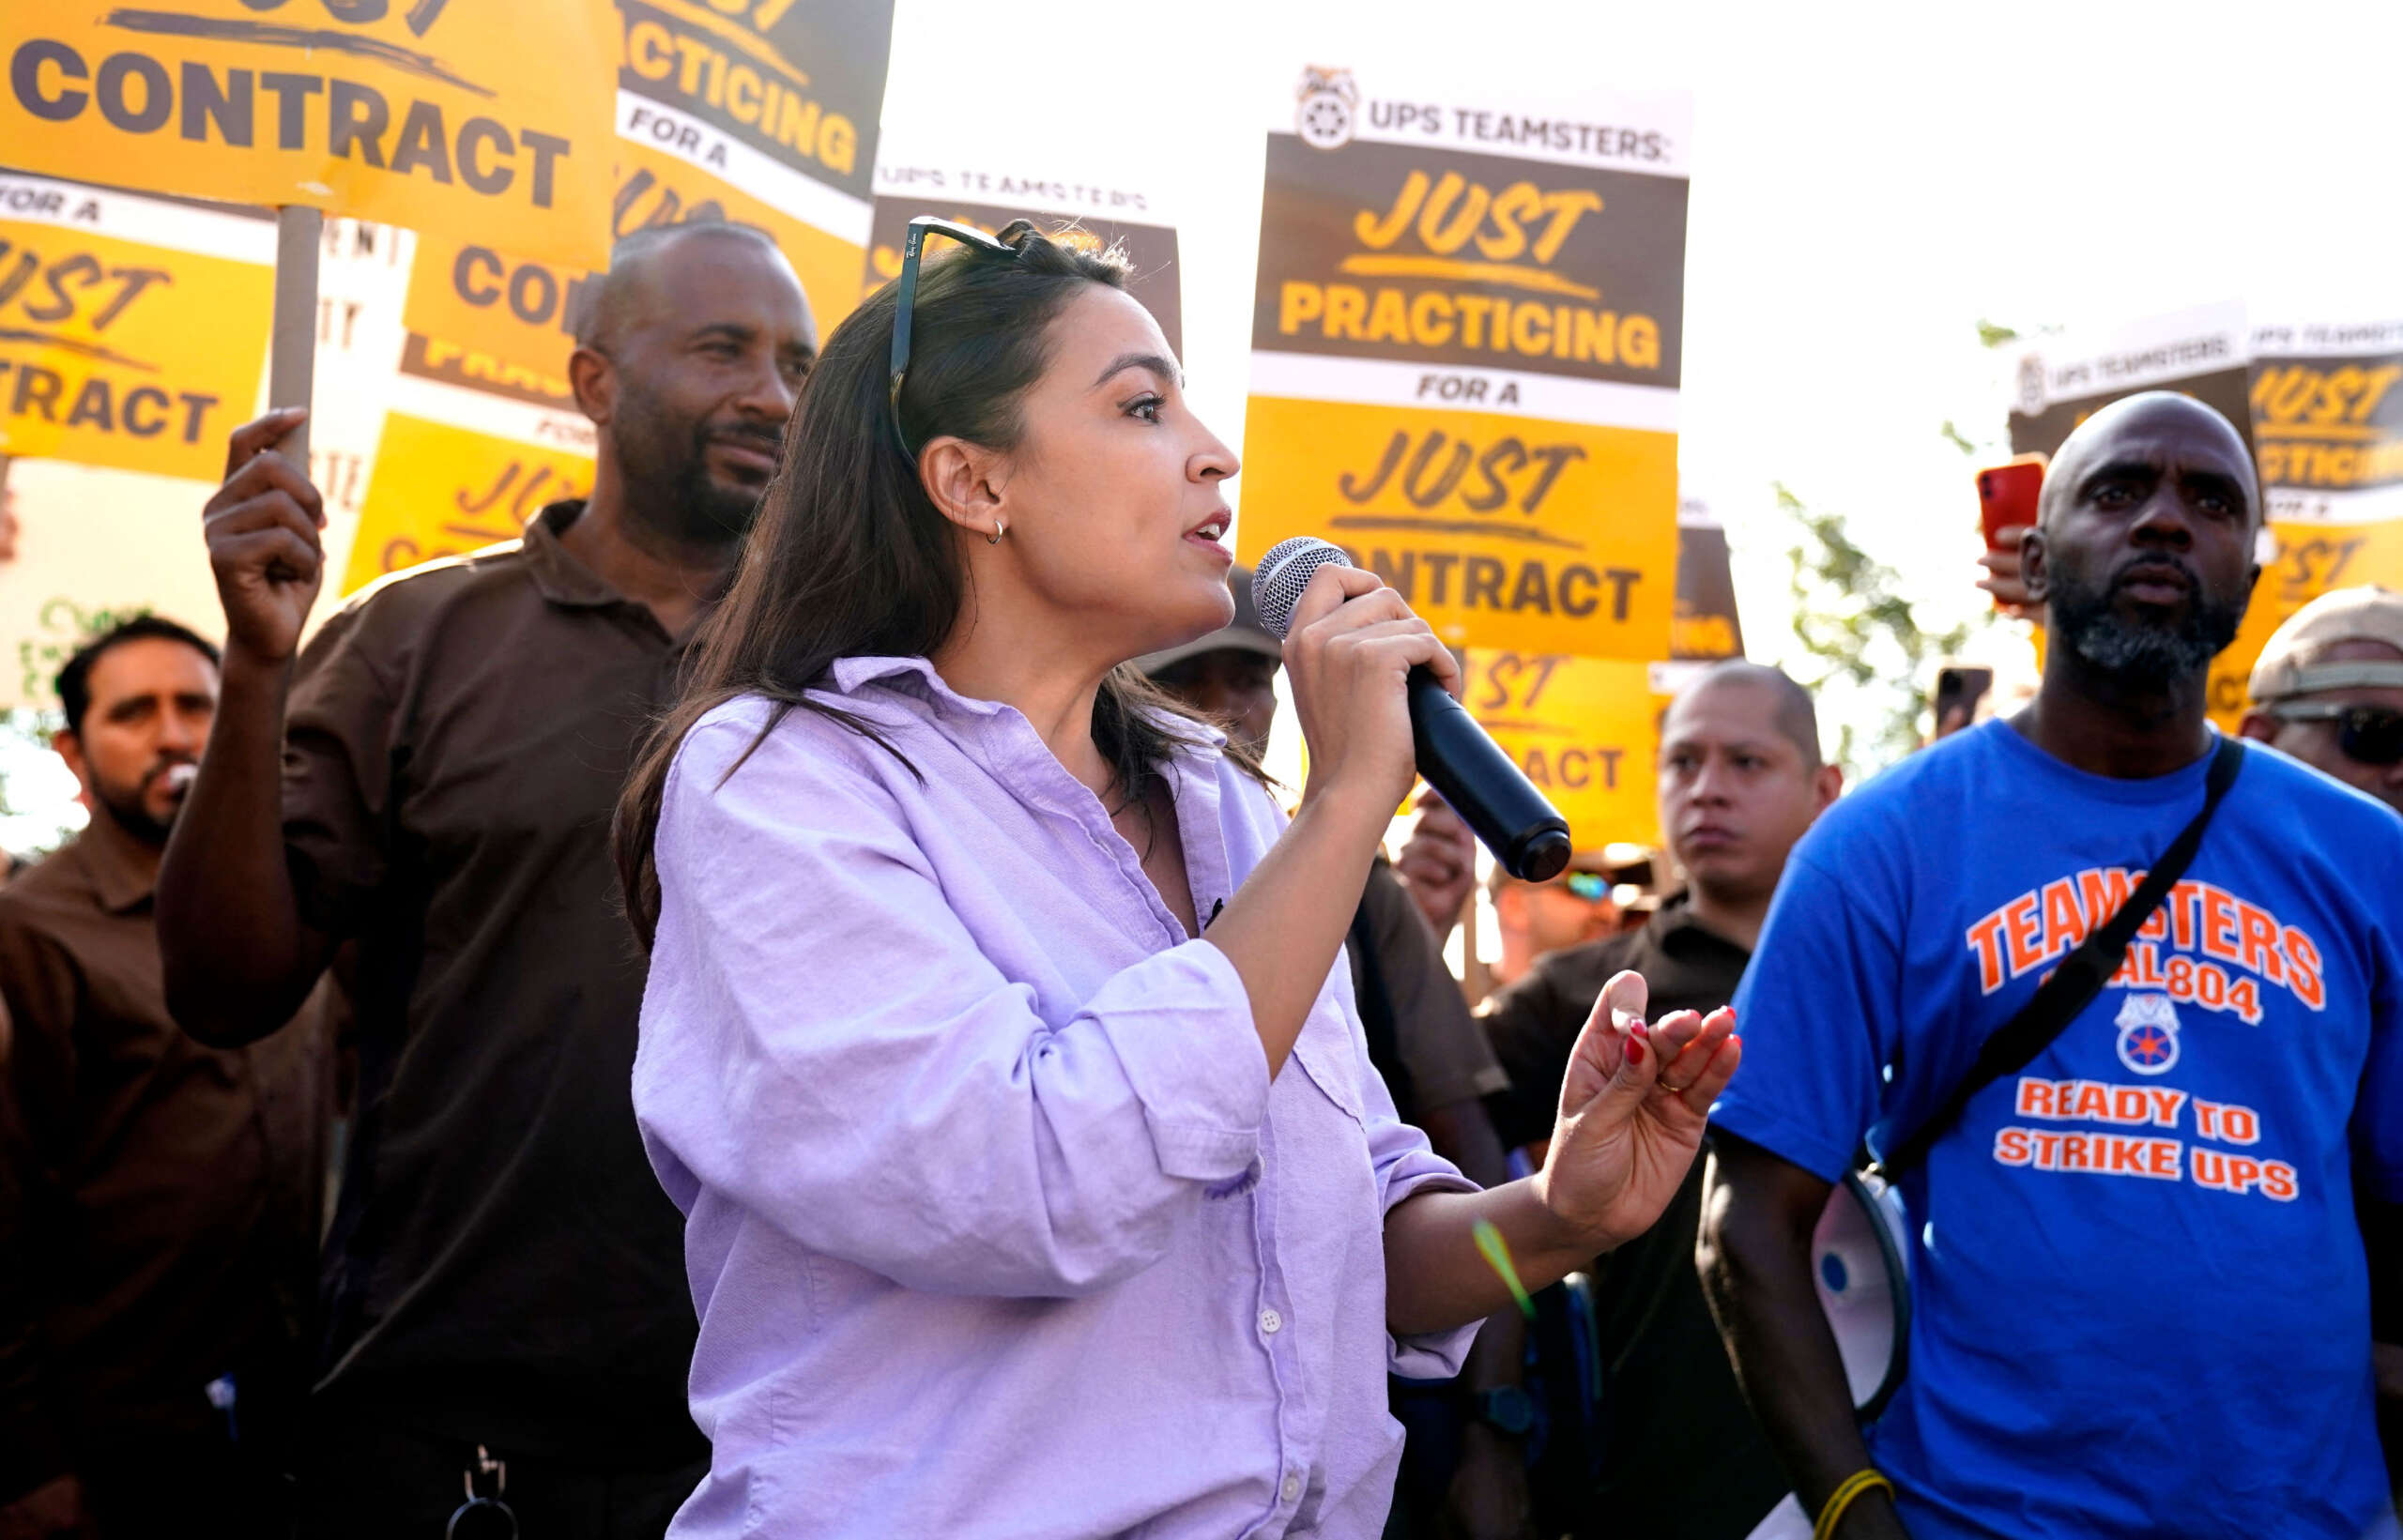 L'AOC condamne UPS pour avoir refusé de payer équitablement les travailleurs lors d'un rassemblement avec les Teamsters